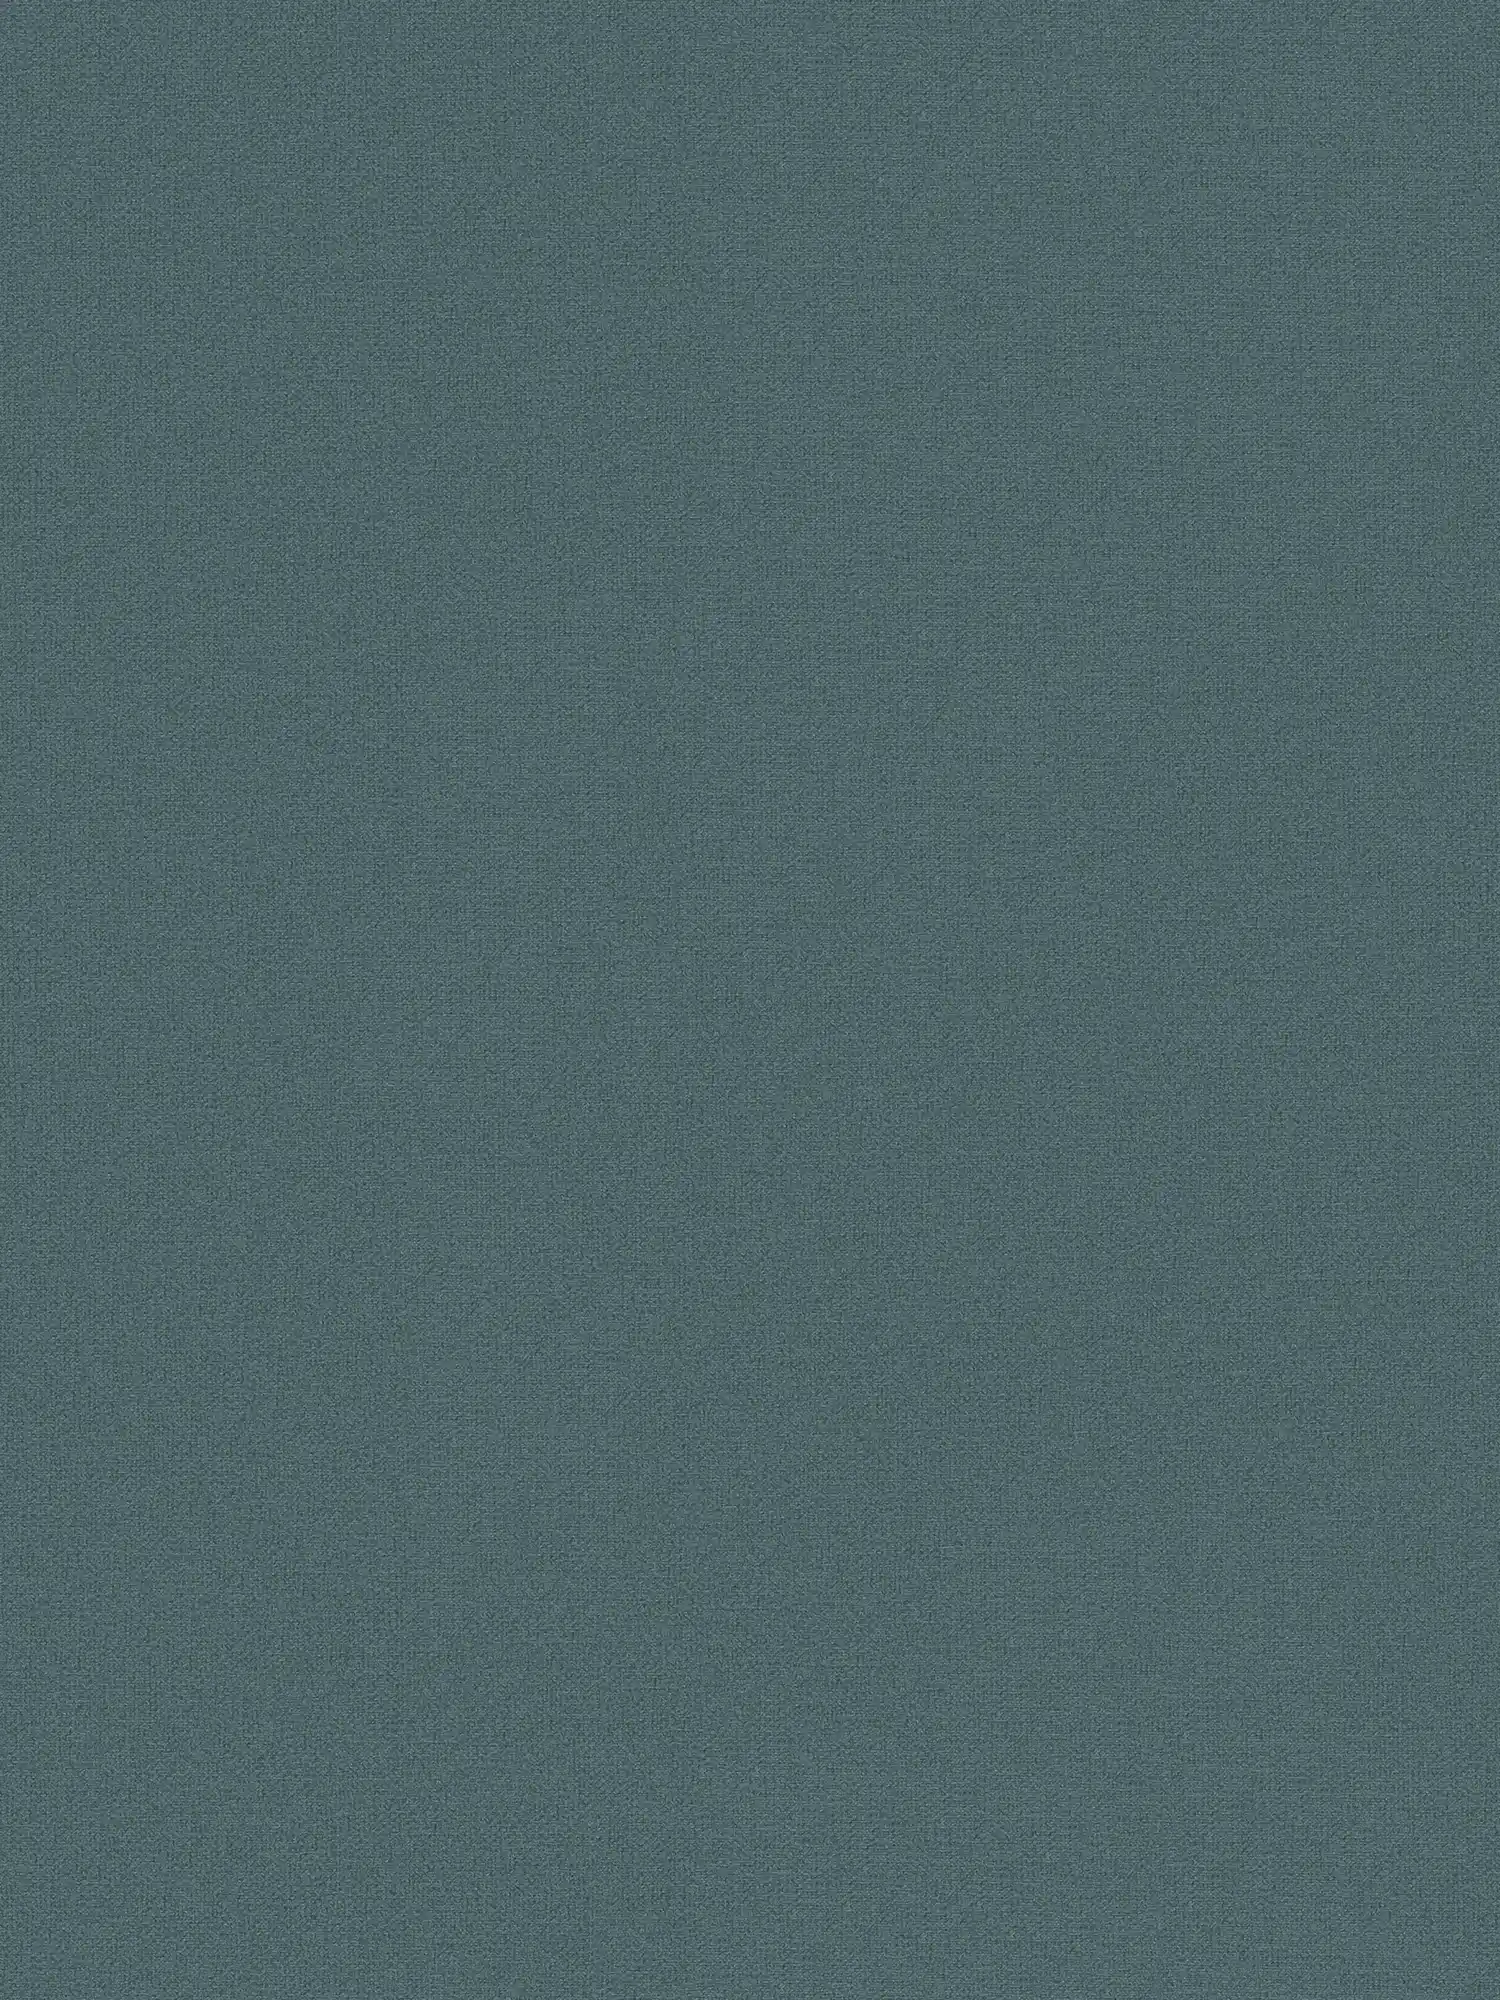 Effen vliesbehang met linnenlook PVC-vrij - Blauw, Grijs
